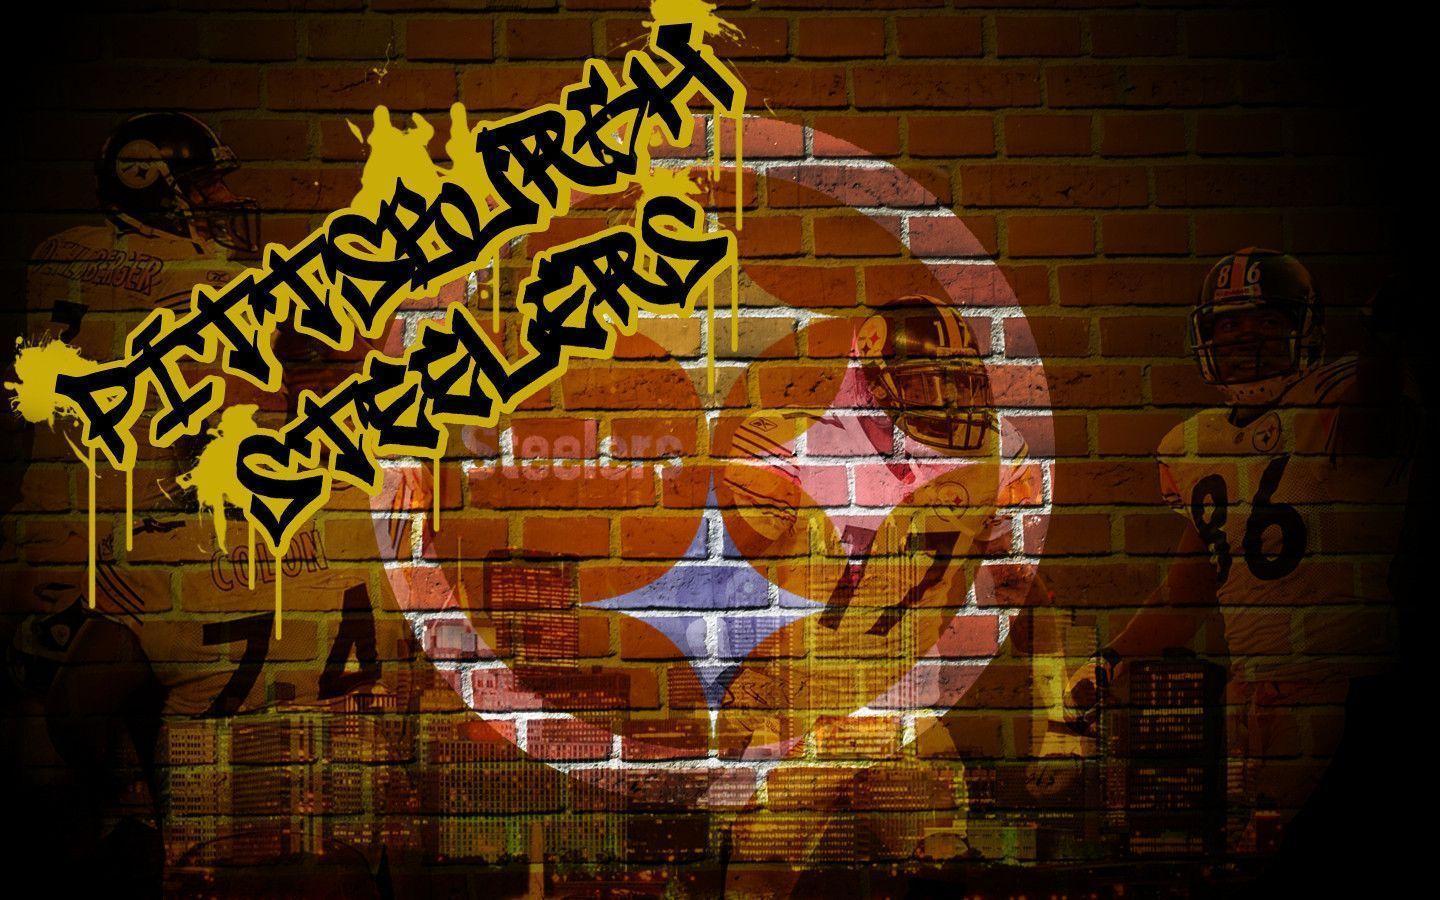 Pittsburgh Steelers wallpaper HD image. Pittsburgh Steelers